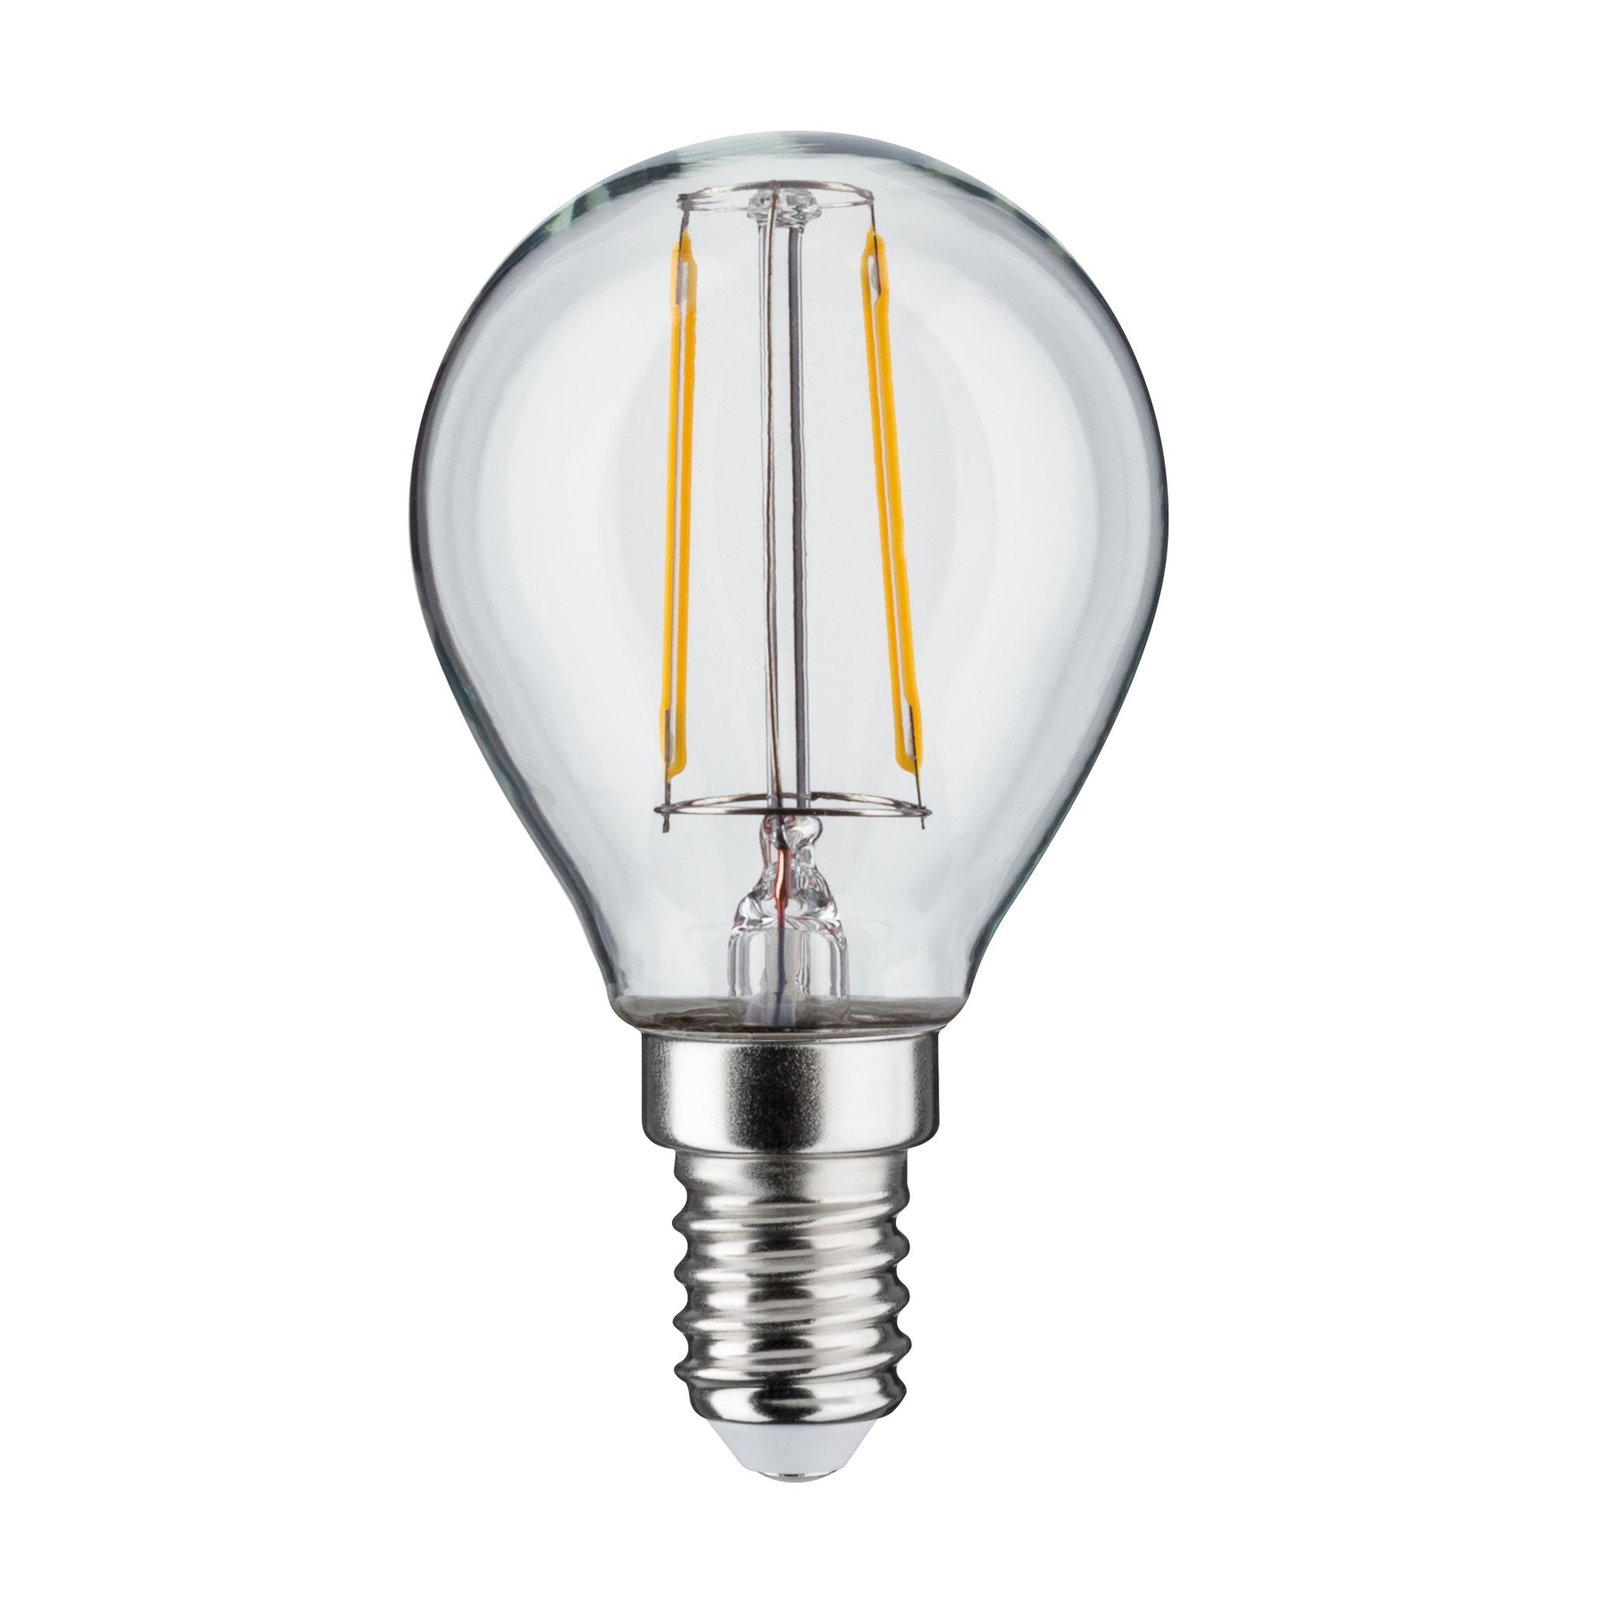 Paulmann LED-Lampe E14 2,7W 2700K Filament 2er-Set